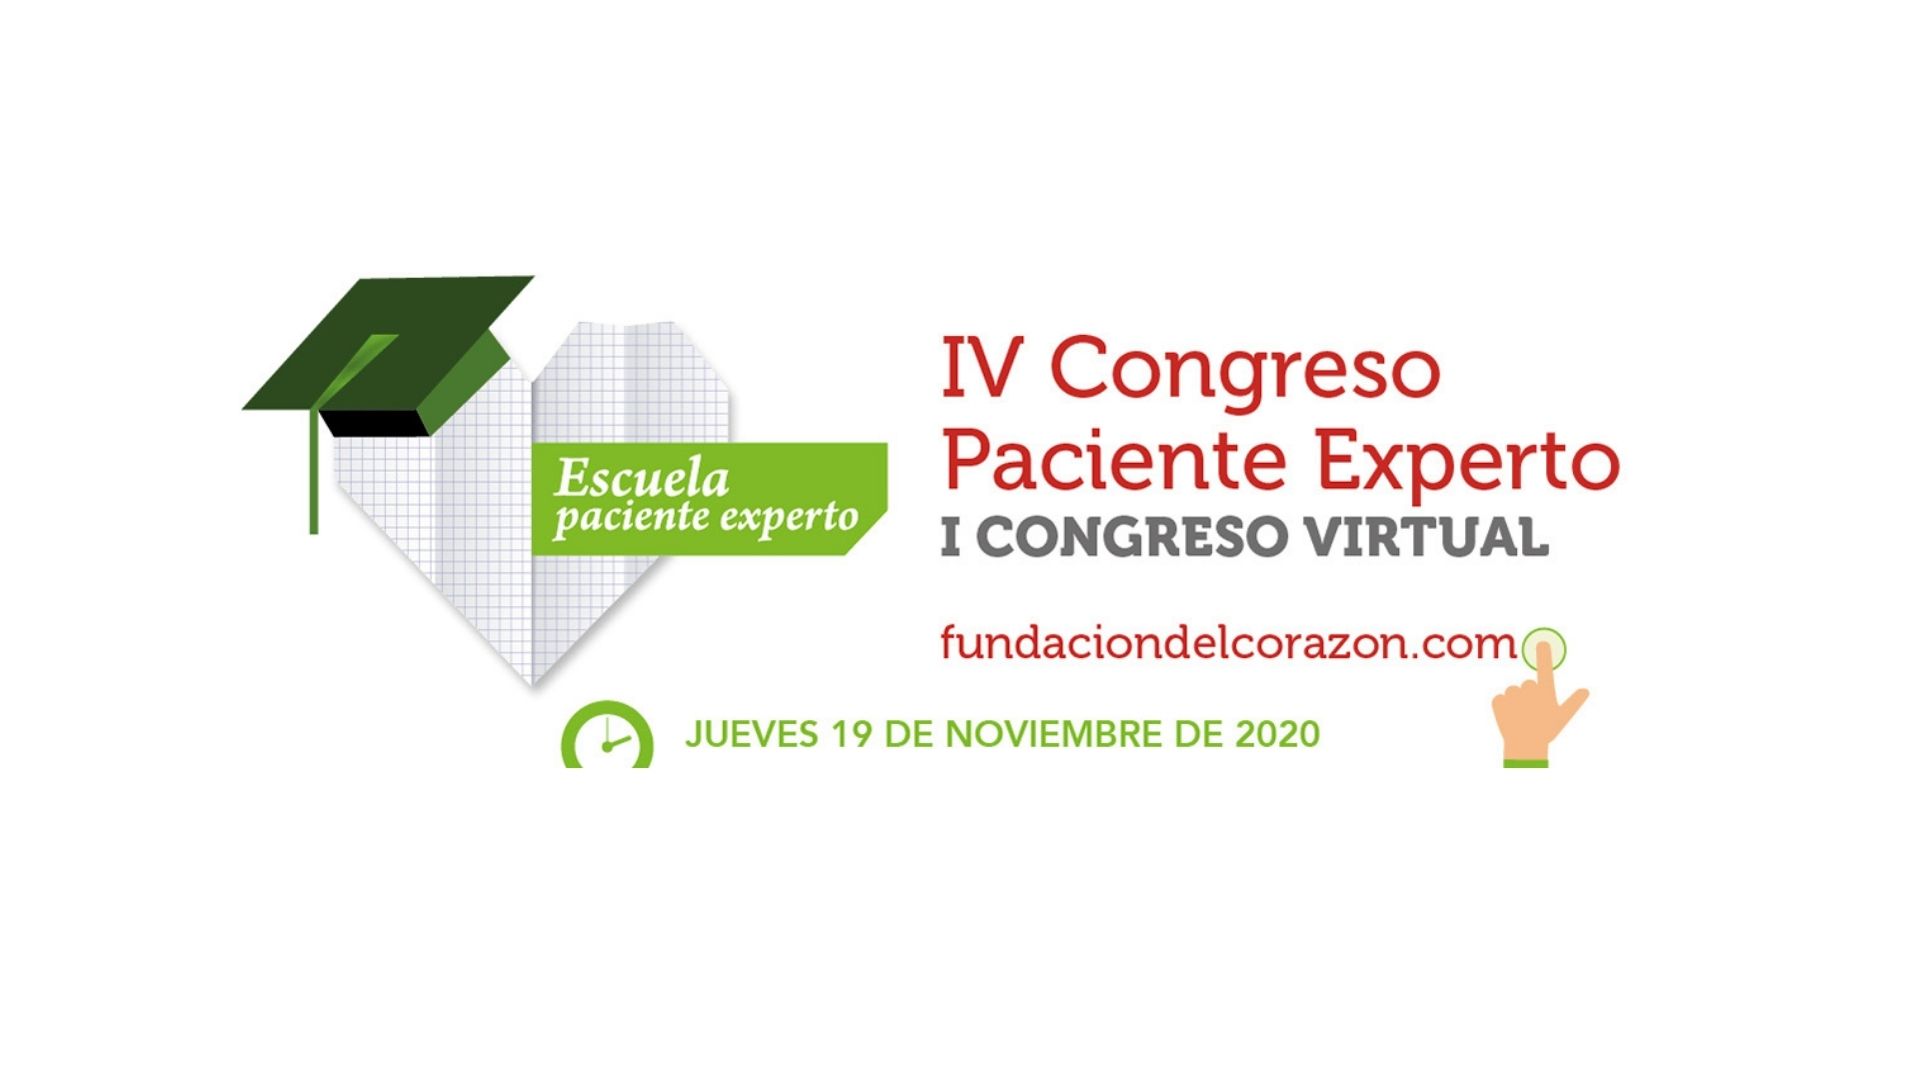 La FEC organiza el I Congreso Paciente Experto Cardiovascular virtual